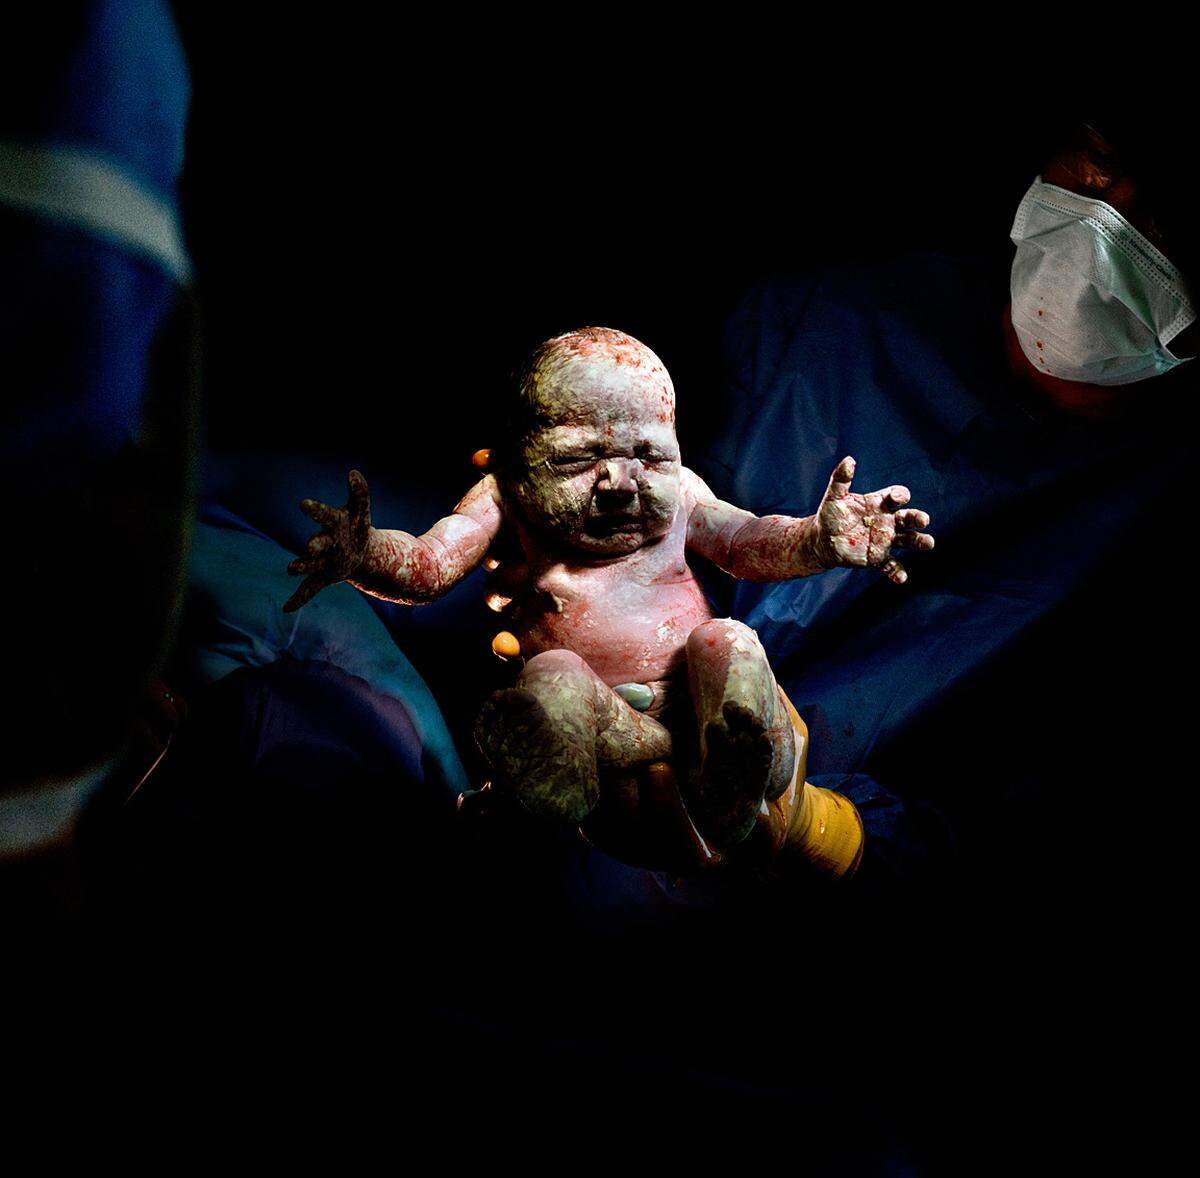 Christian Berthelot, Frankreich: "Caesar #19".Berthelot fotografiert Babys, die via Kaiserschnitt zur Welt gekommen sind. Der Titel der Serie "Caesar" bezieht sich auf den englischen Begriff für Kaiserschnitt: Caesarean section.